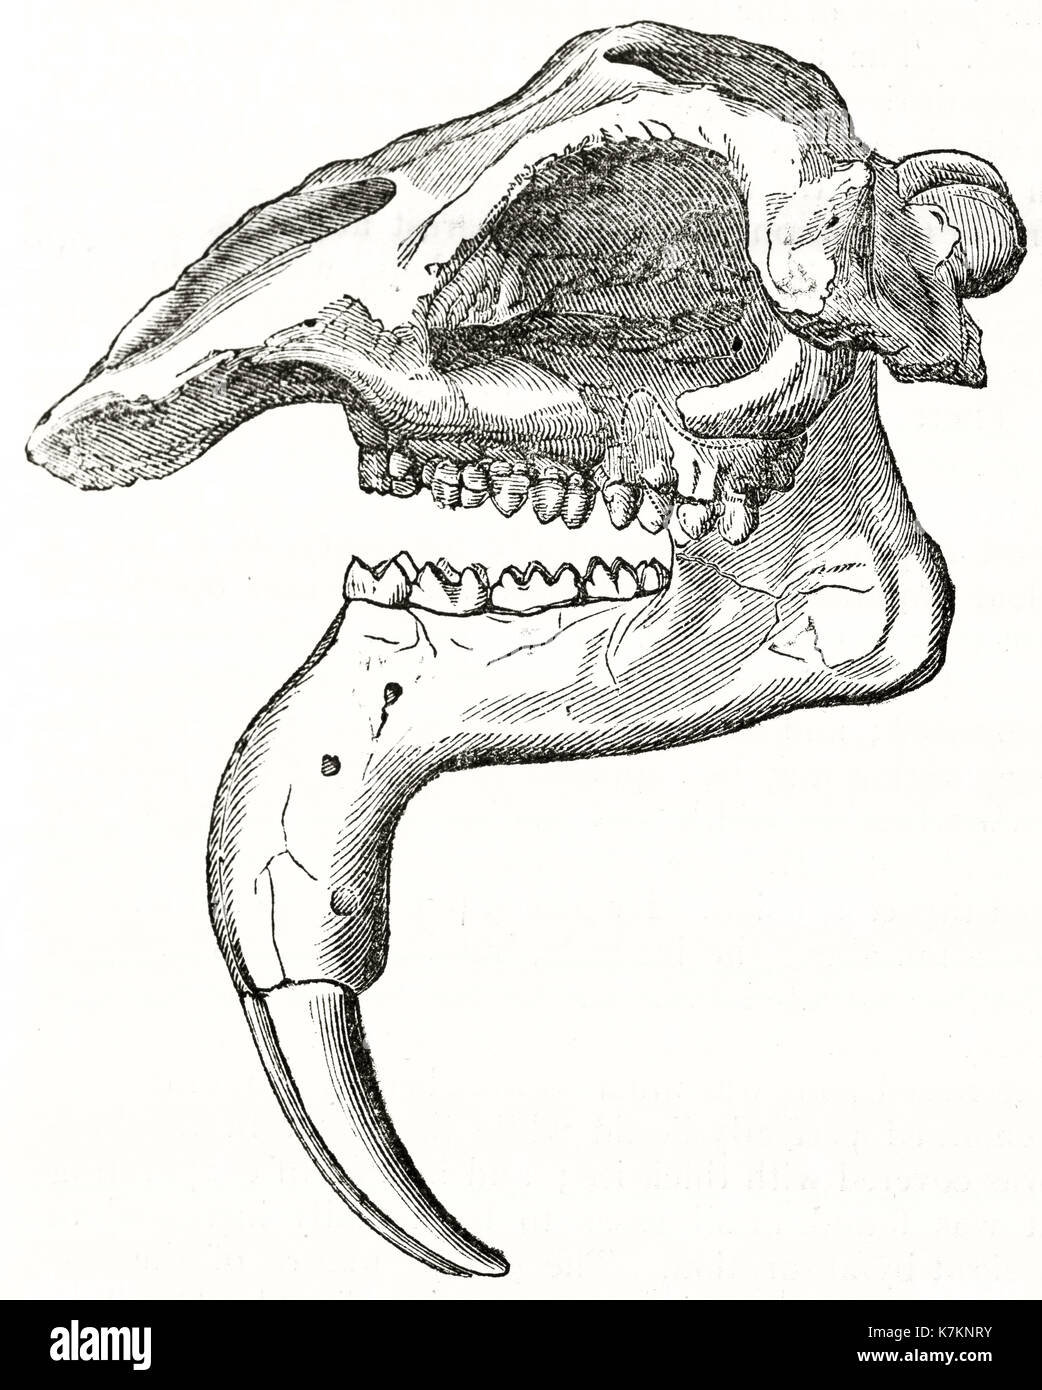 Vecchia illustrazione di un cranio Deinotherium. Da autore non identificato, publ. su Penny Magazine, London, 1837 Foto Stock